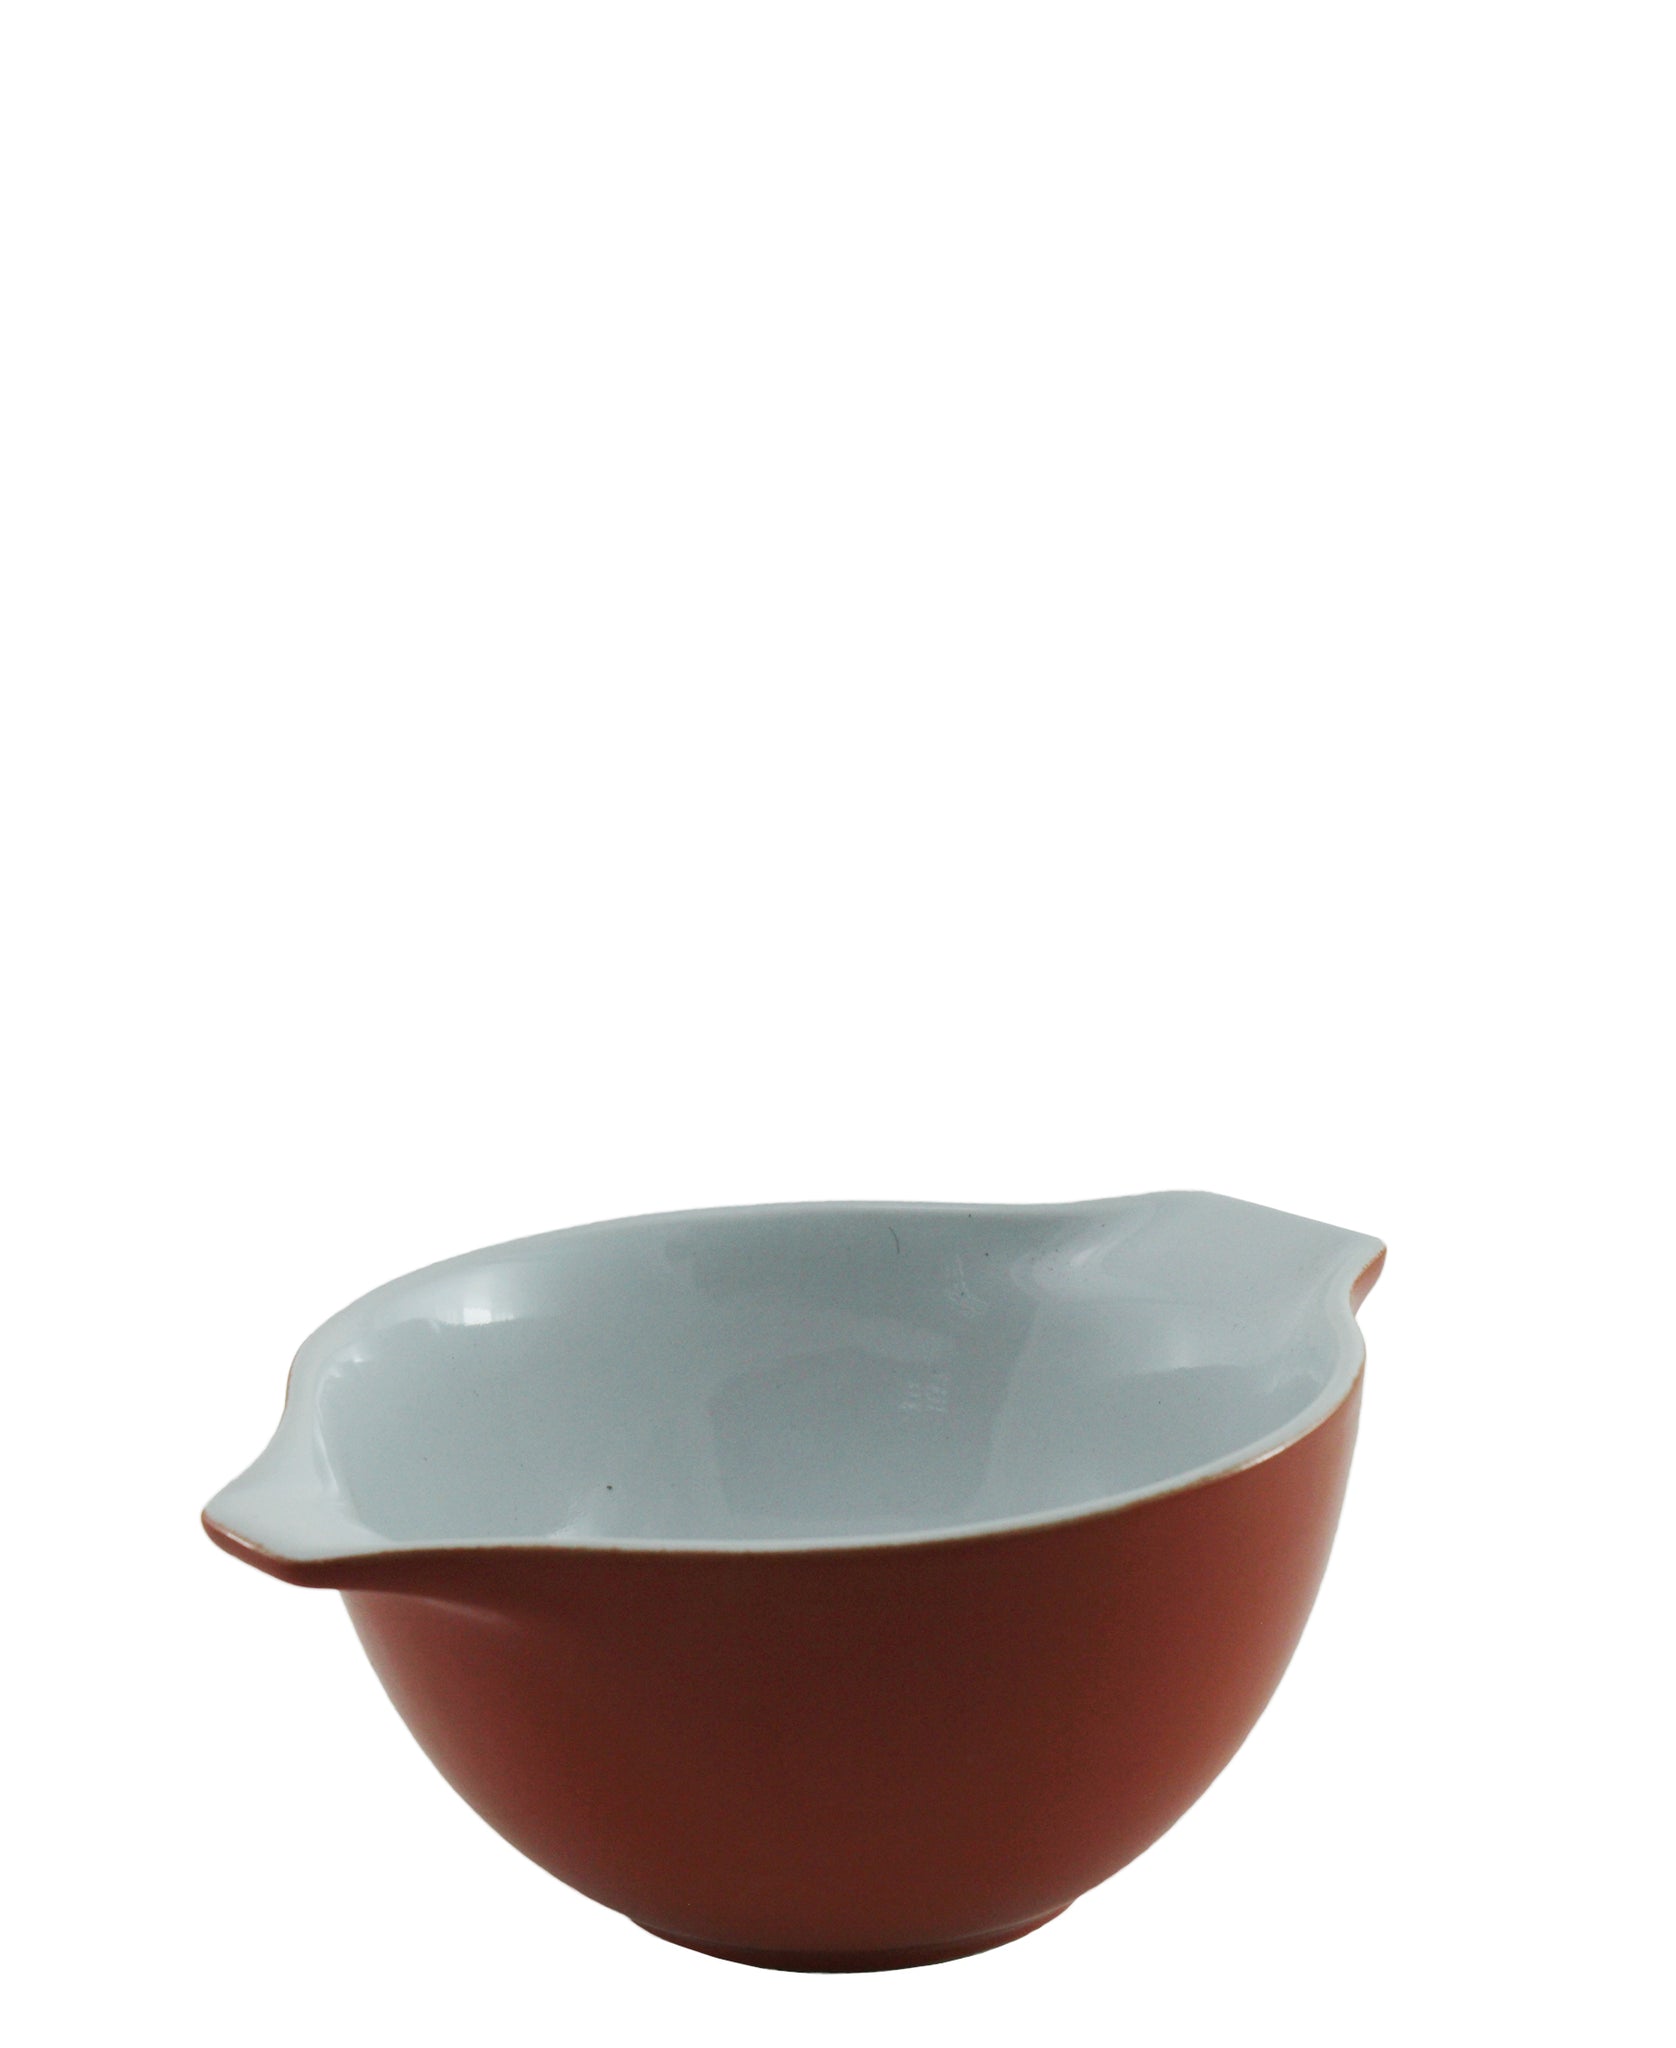 Pyrex Cinderella Ceramic Bowl 500ml - Red